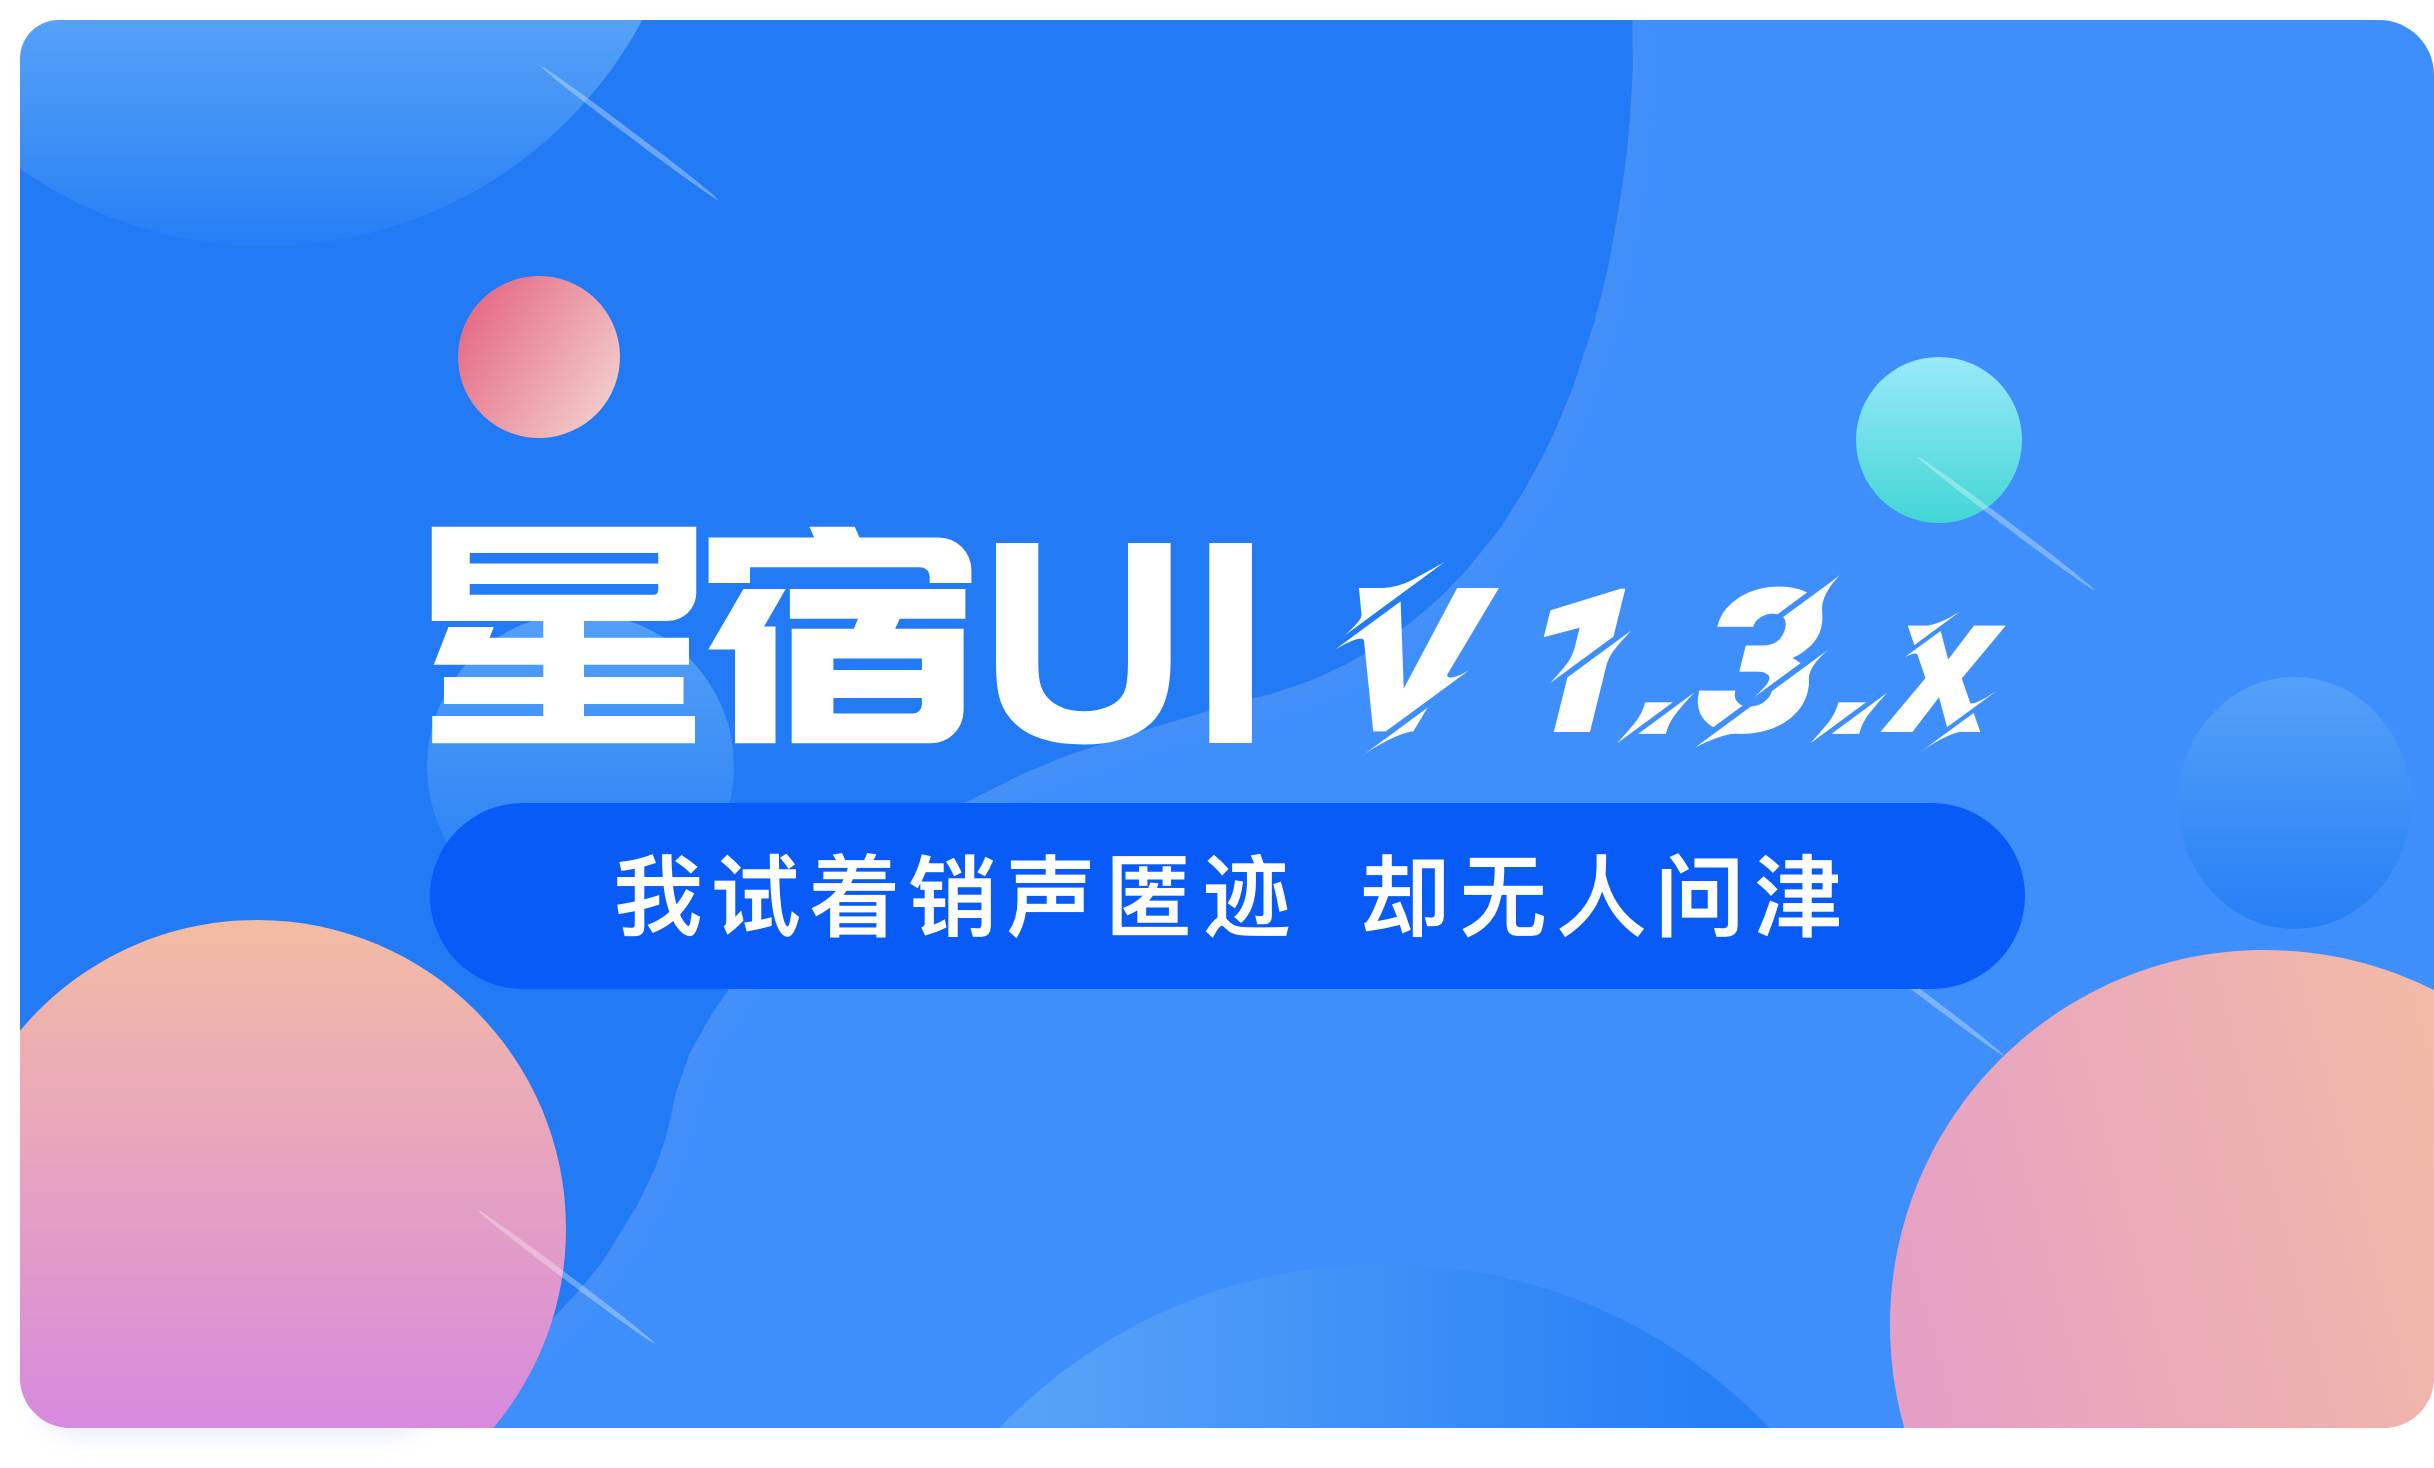 星宿UI V1.2 ：wordpress开源资源下载小程序，新增插画UI细节提升 2